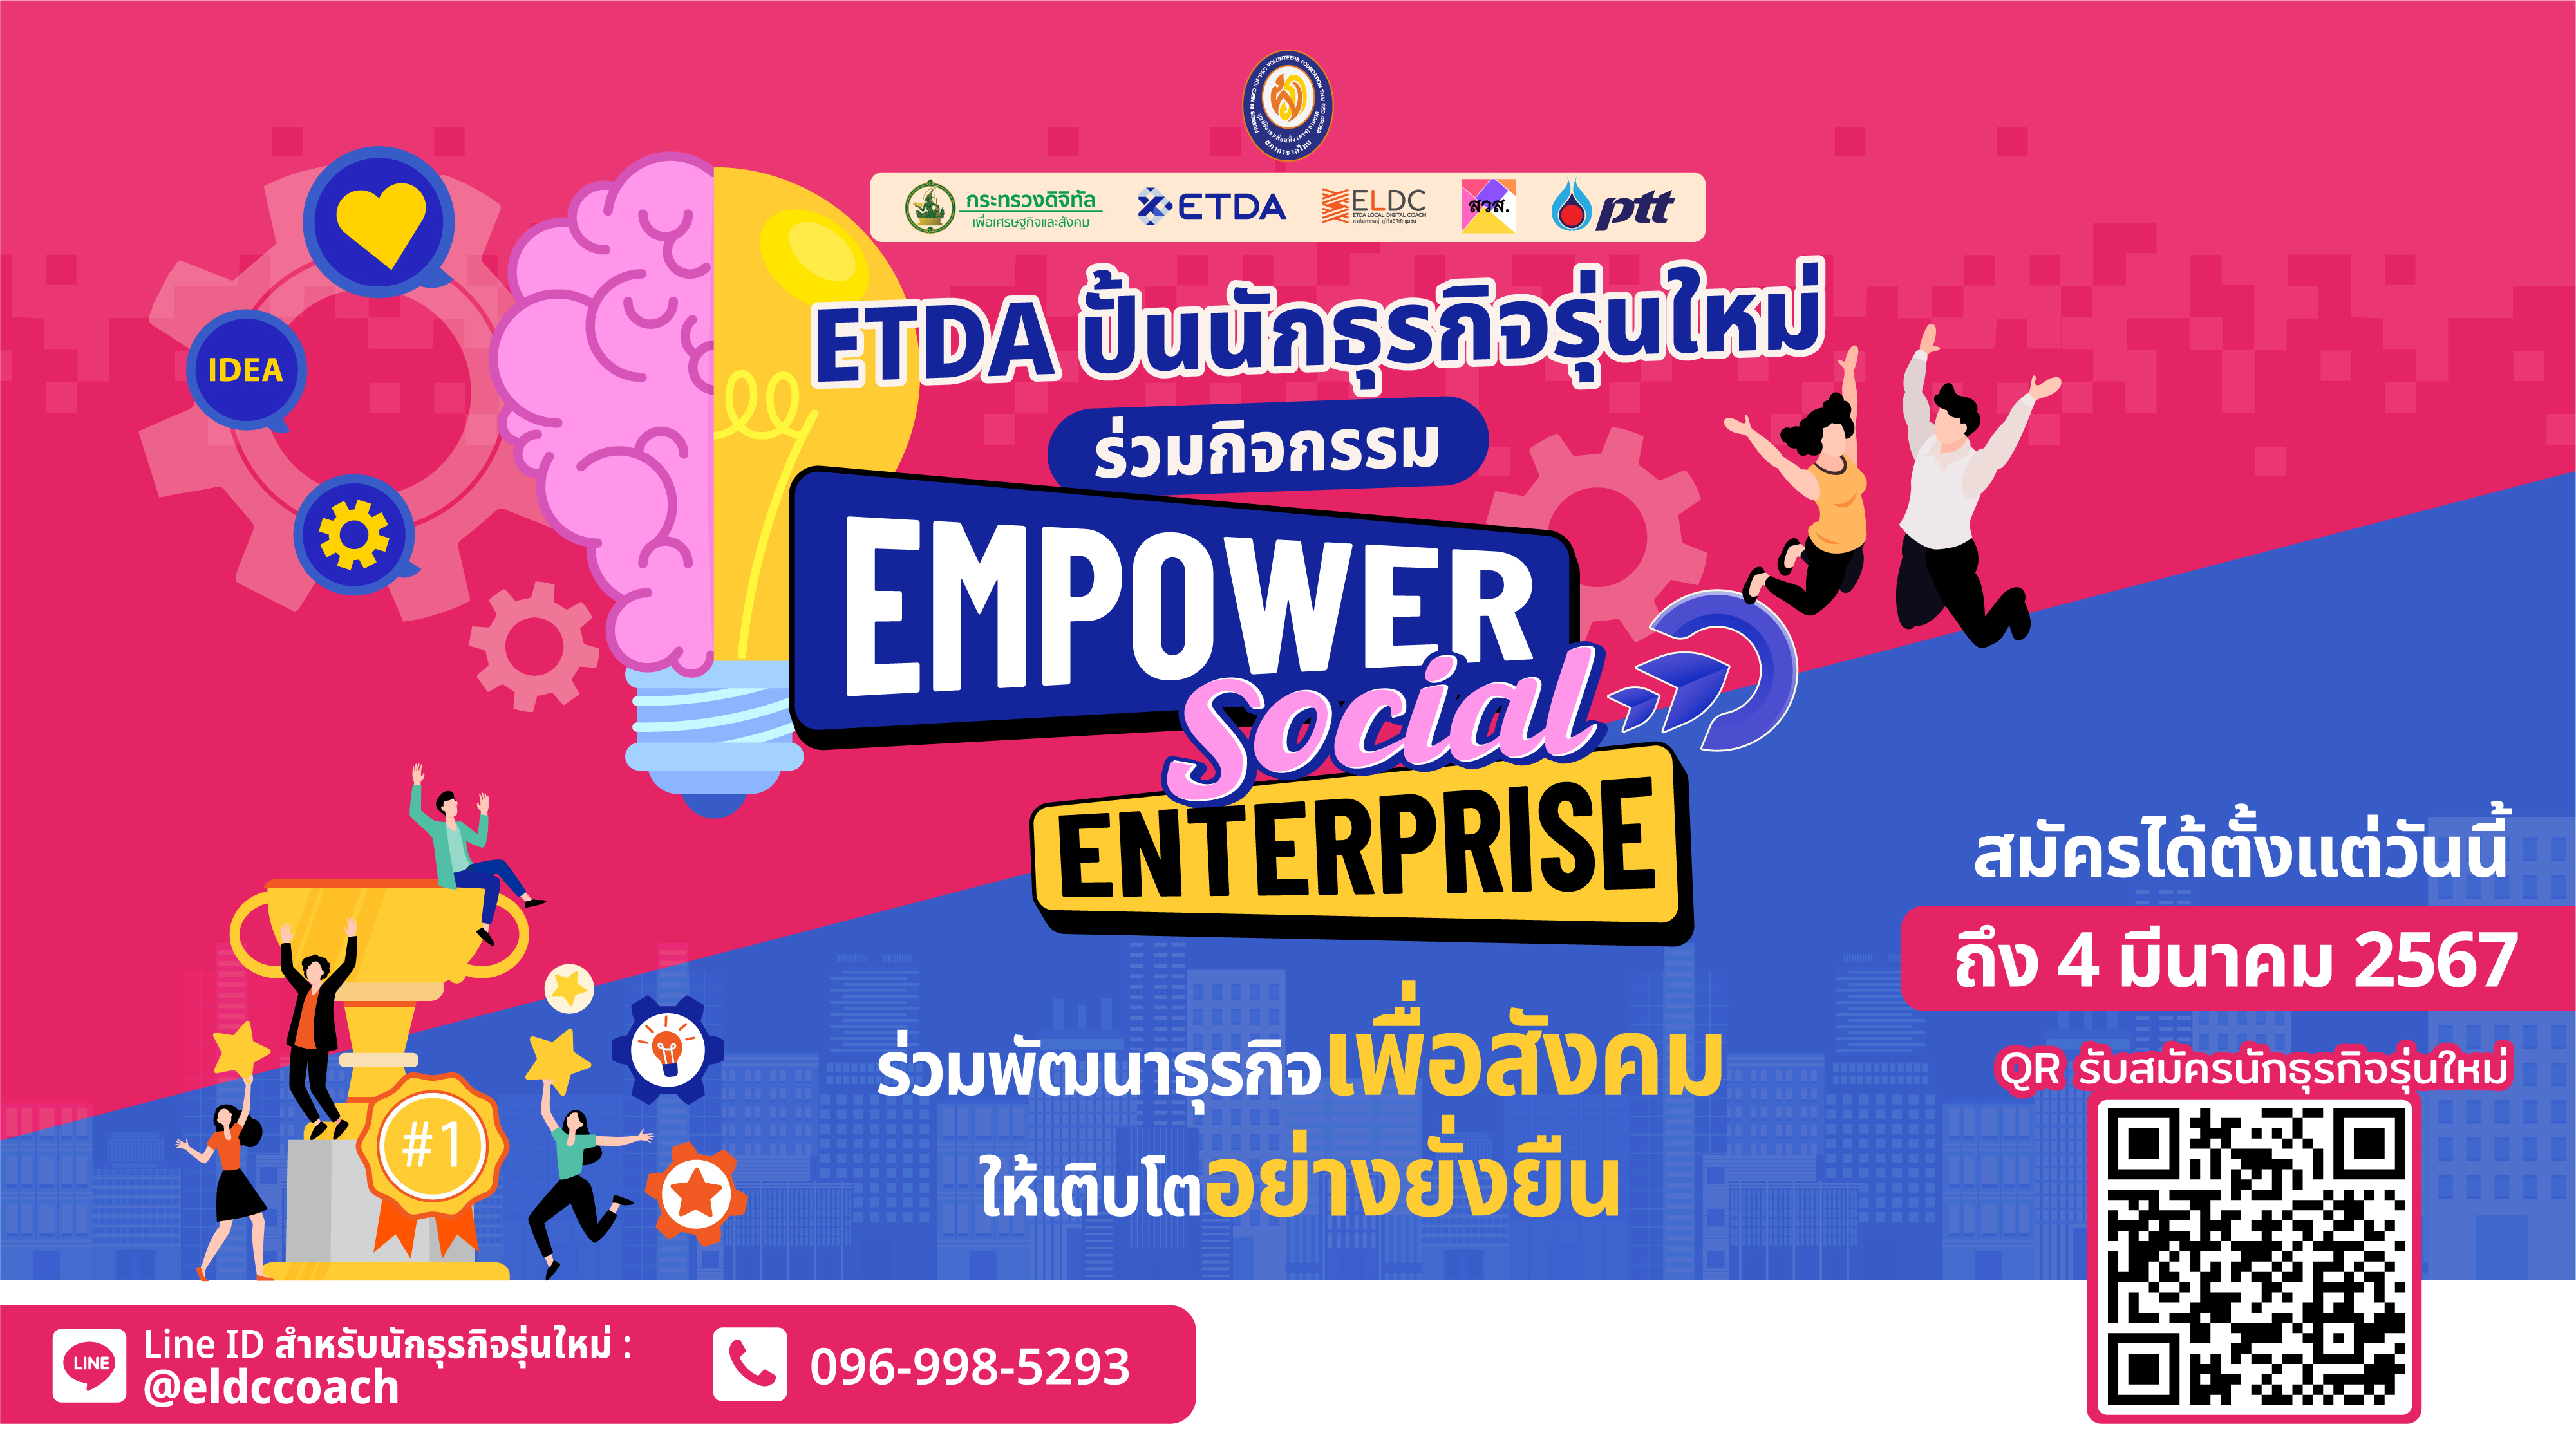 ETDA เปิดรับสมัครนักศึกษา และชุมชนทั่วไทย ก้าวสู่นักธุรกิจรุ่นใหม่  ดันชุมชนสร้างโอกาส เพิ่มรายได้ ผ่านกิจกรรม “EMPOWER SOCIAL ENTERPRISE”